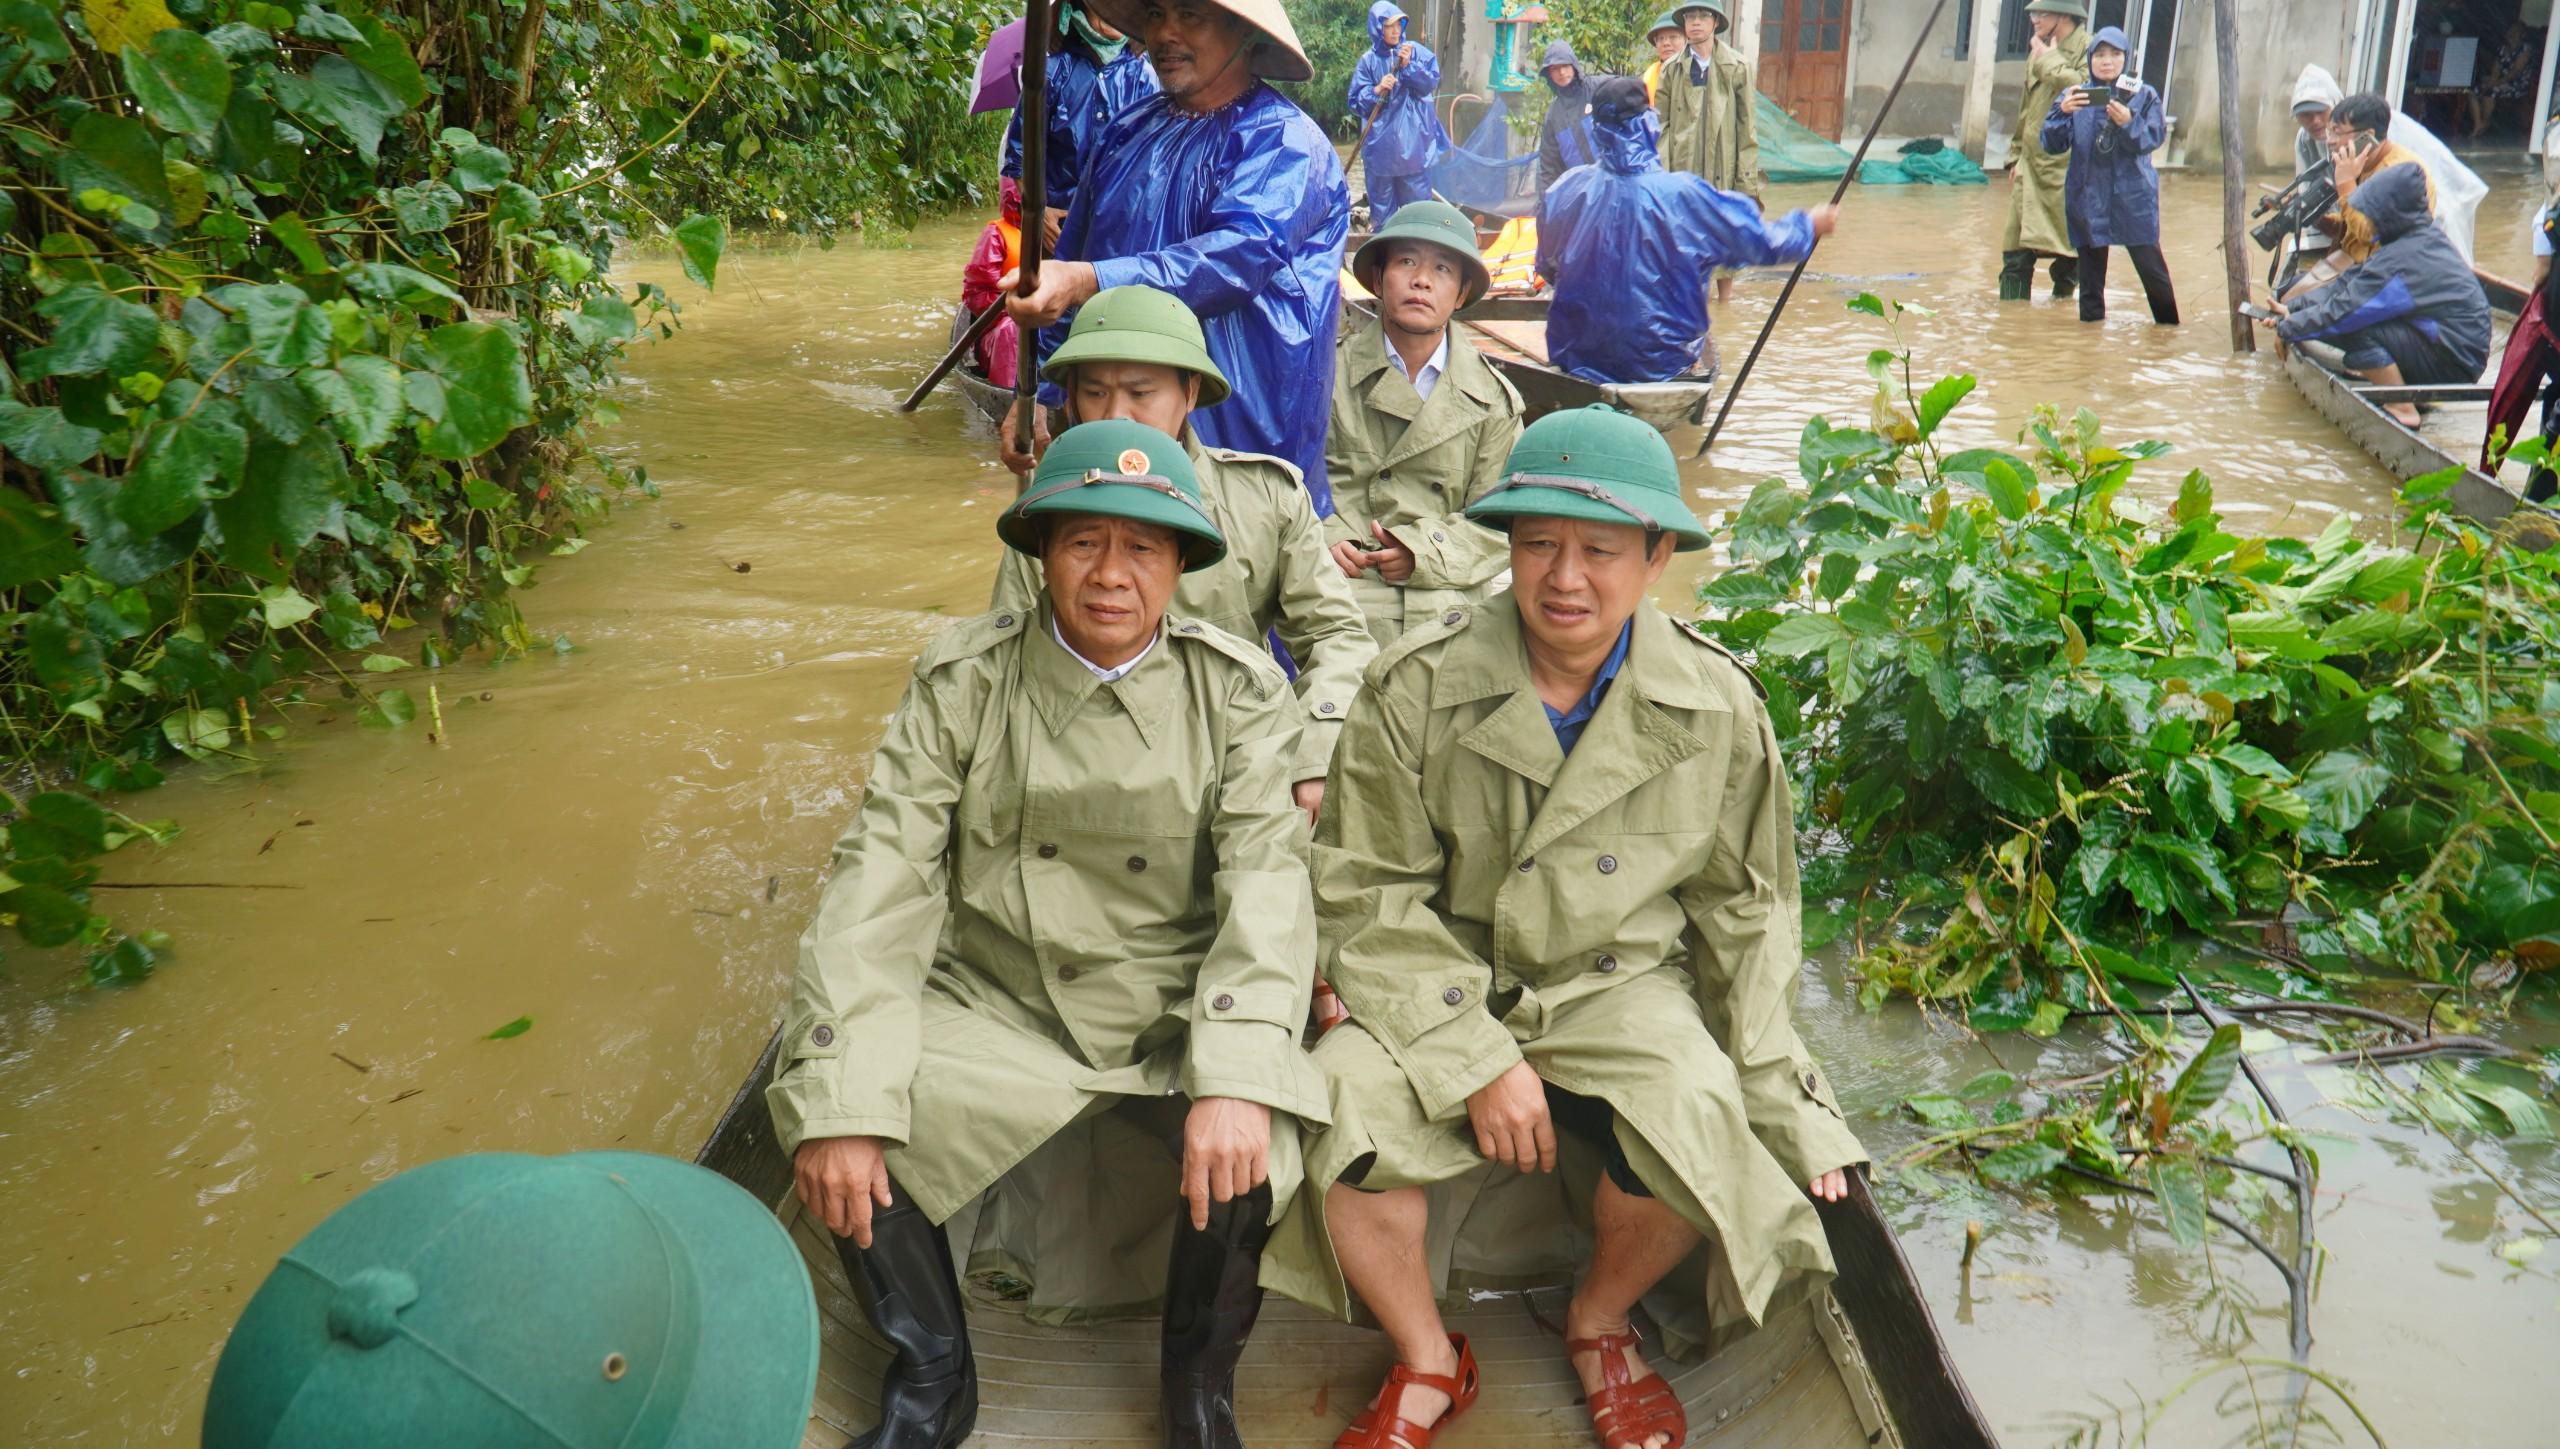 Phó Thủ tướng Lê Văn Thành (bên trái) cùng lãnh đạo tỉnh Thừa Thiên - Huế đi ghe vào vùng "rốn lũ" thăm hỏi và tặng quà người dân gặp khó khăn do thiên tai gây ra.